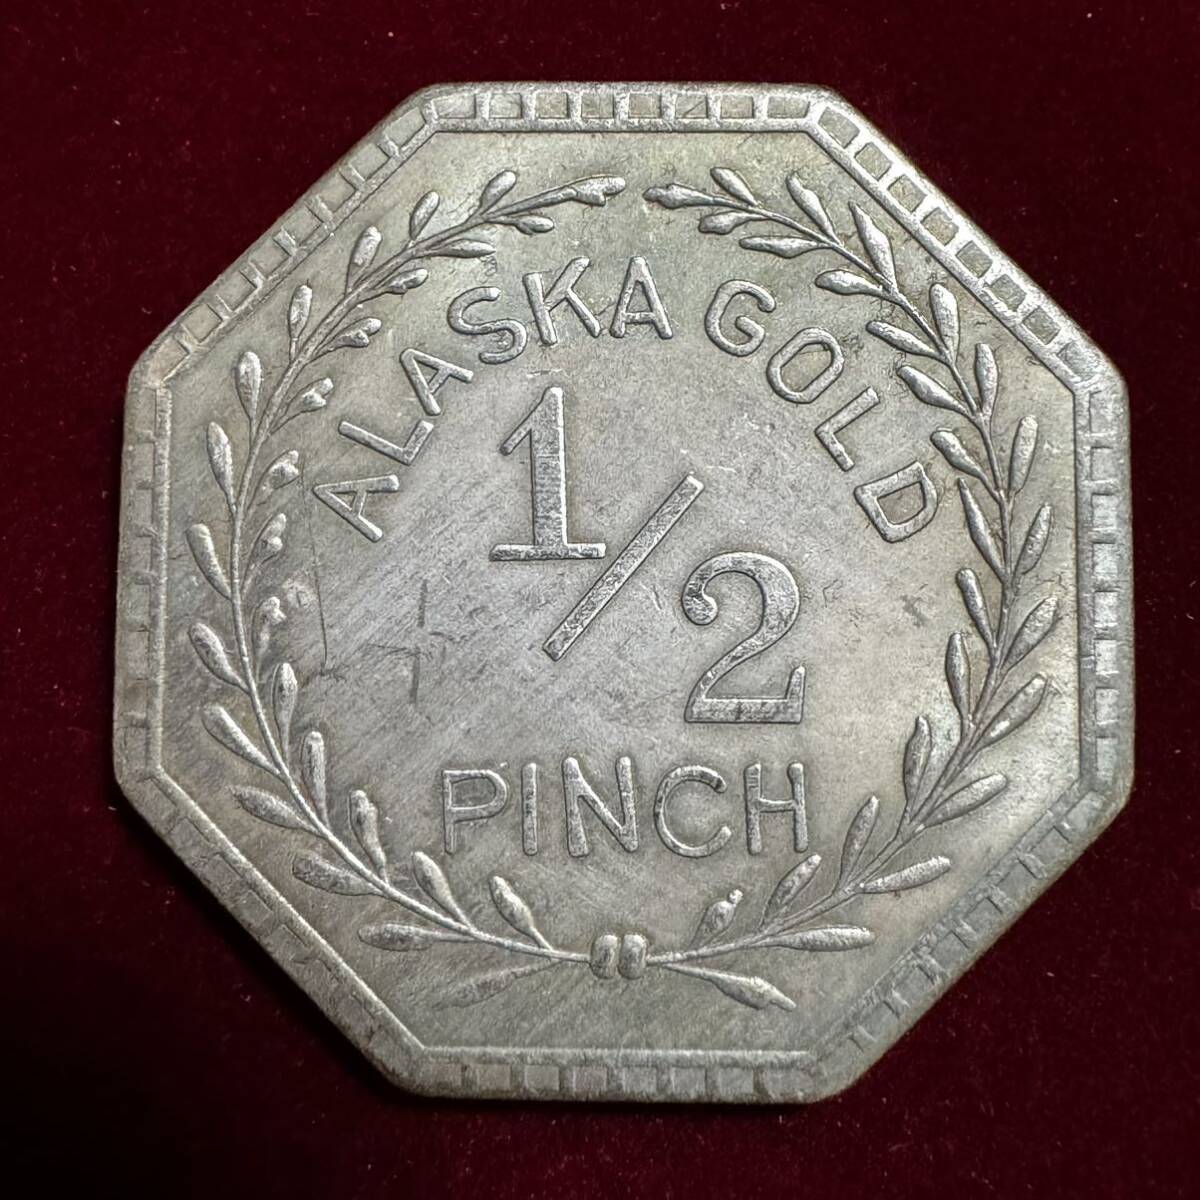 アメリカ 硬貨 古銭 インディアン人像 1900年 イーグル リバティ 八角形 ドル 記念幣 コイン 銀貨 外国古銭 海外硬貨_画像2